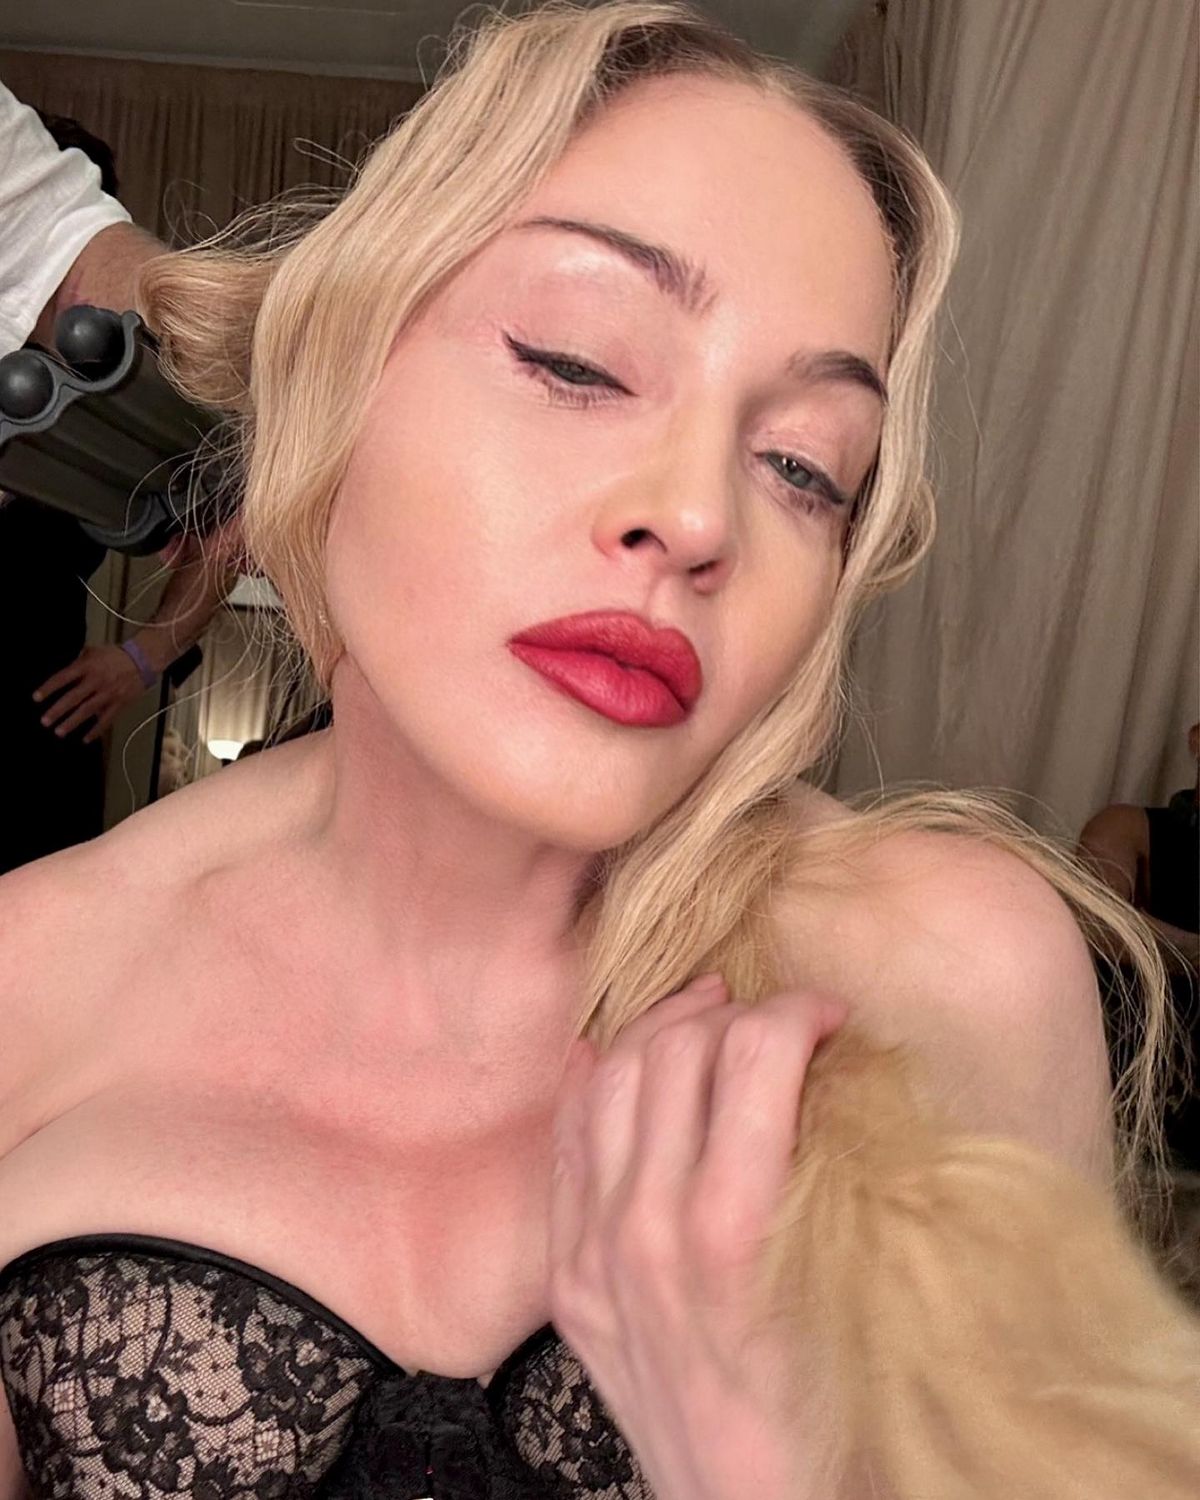 Sur Instagram, Madonna est apparue remarquablement jeune dans l’une des photos.